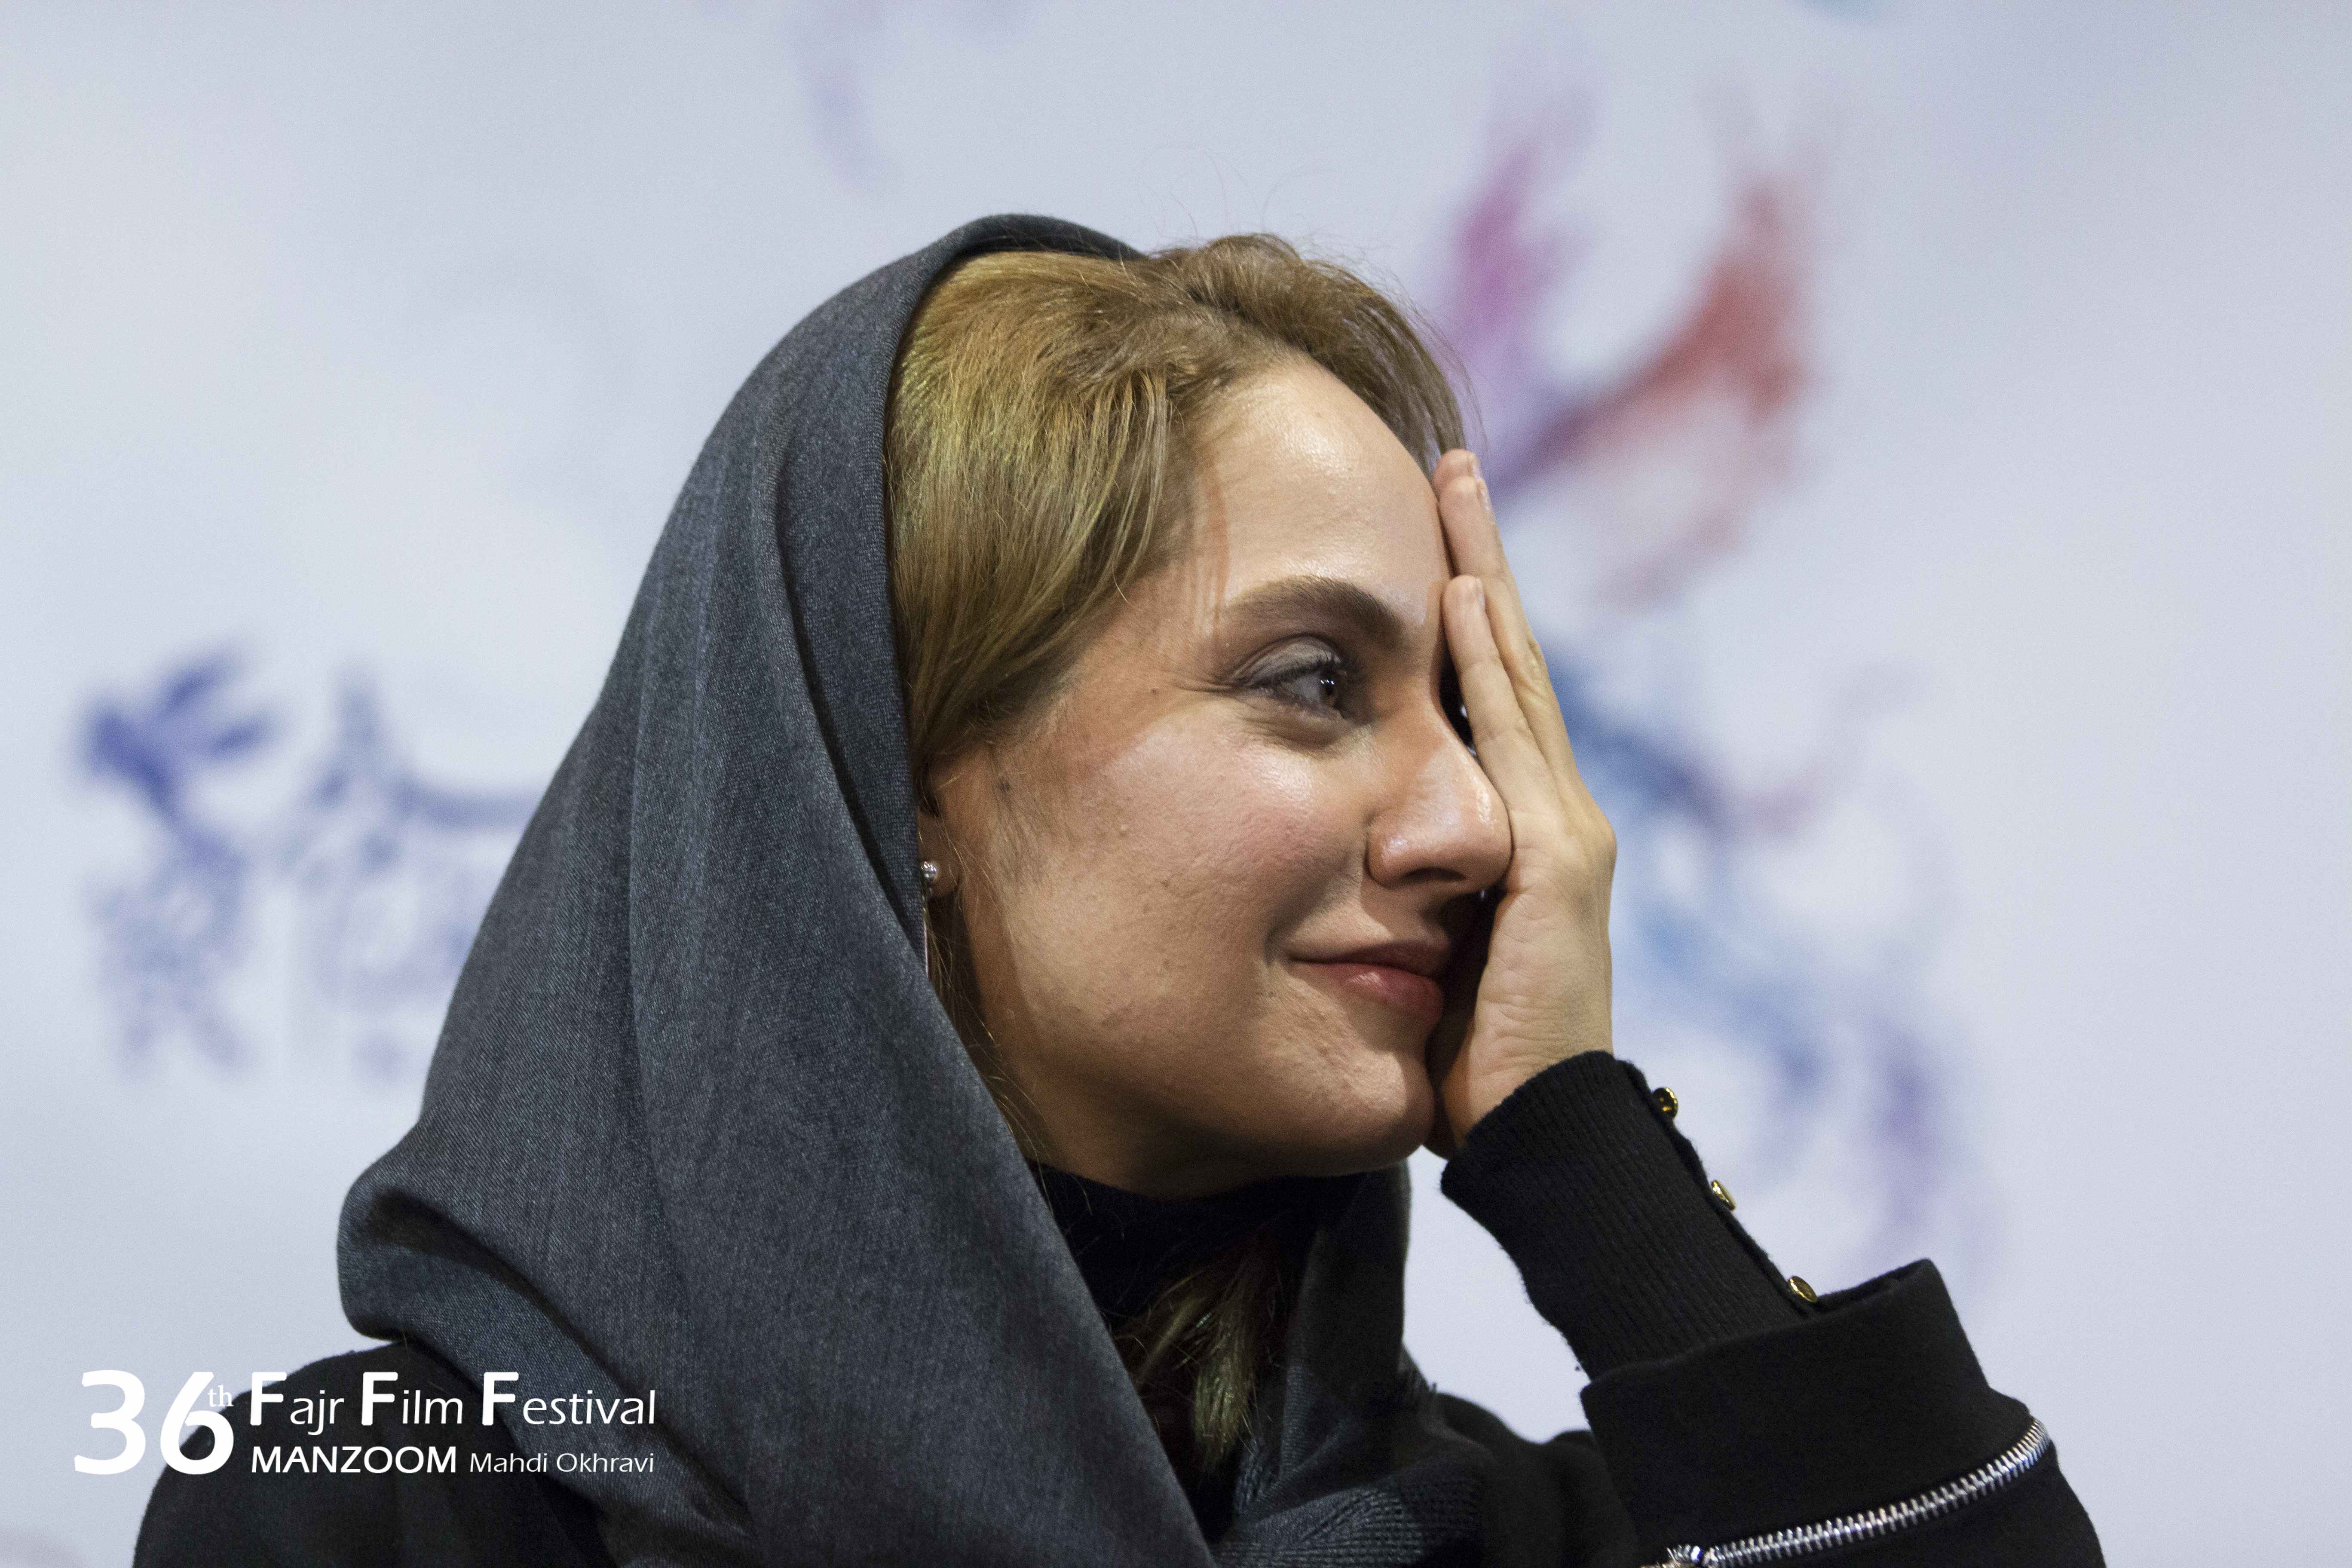 نشست خبری فیلم سینمایی دارکوب با حضور مهناز افشار